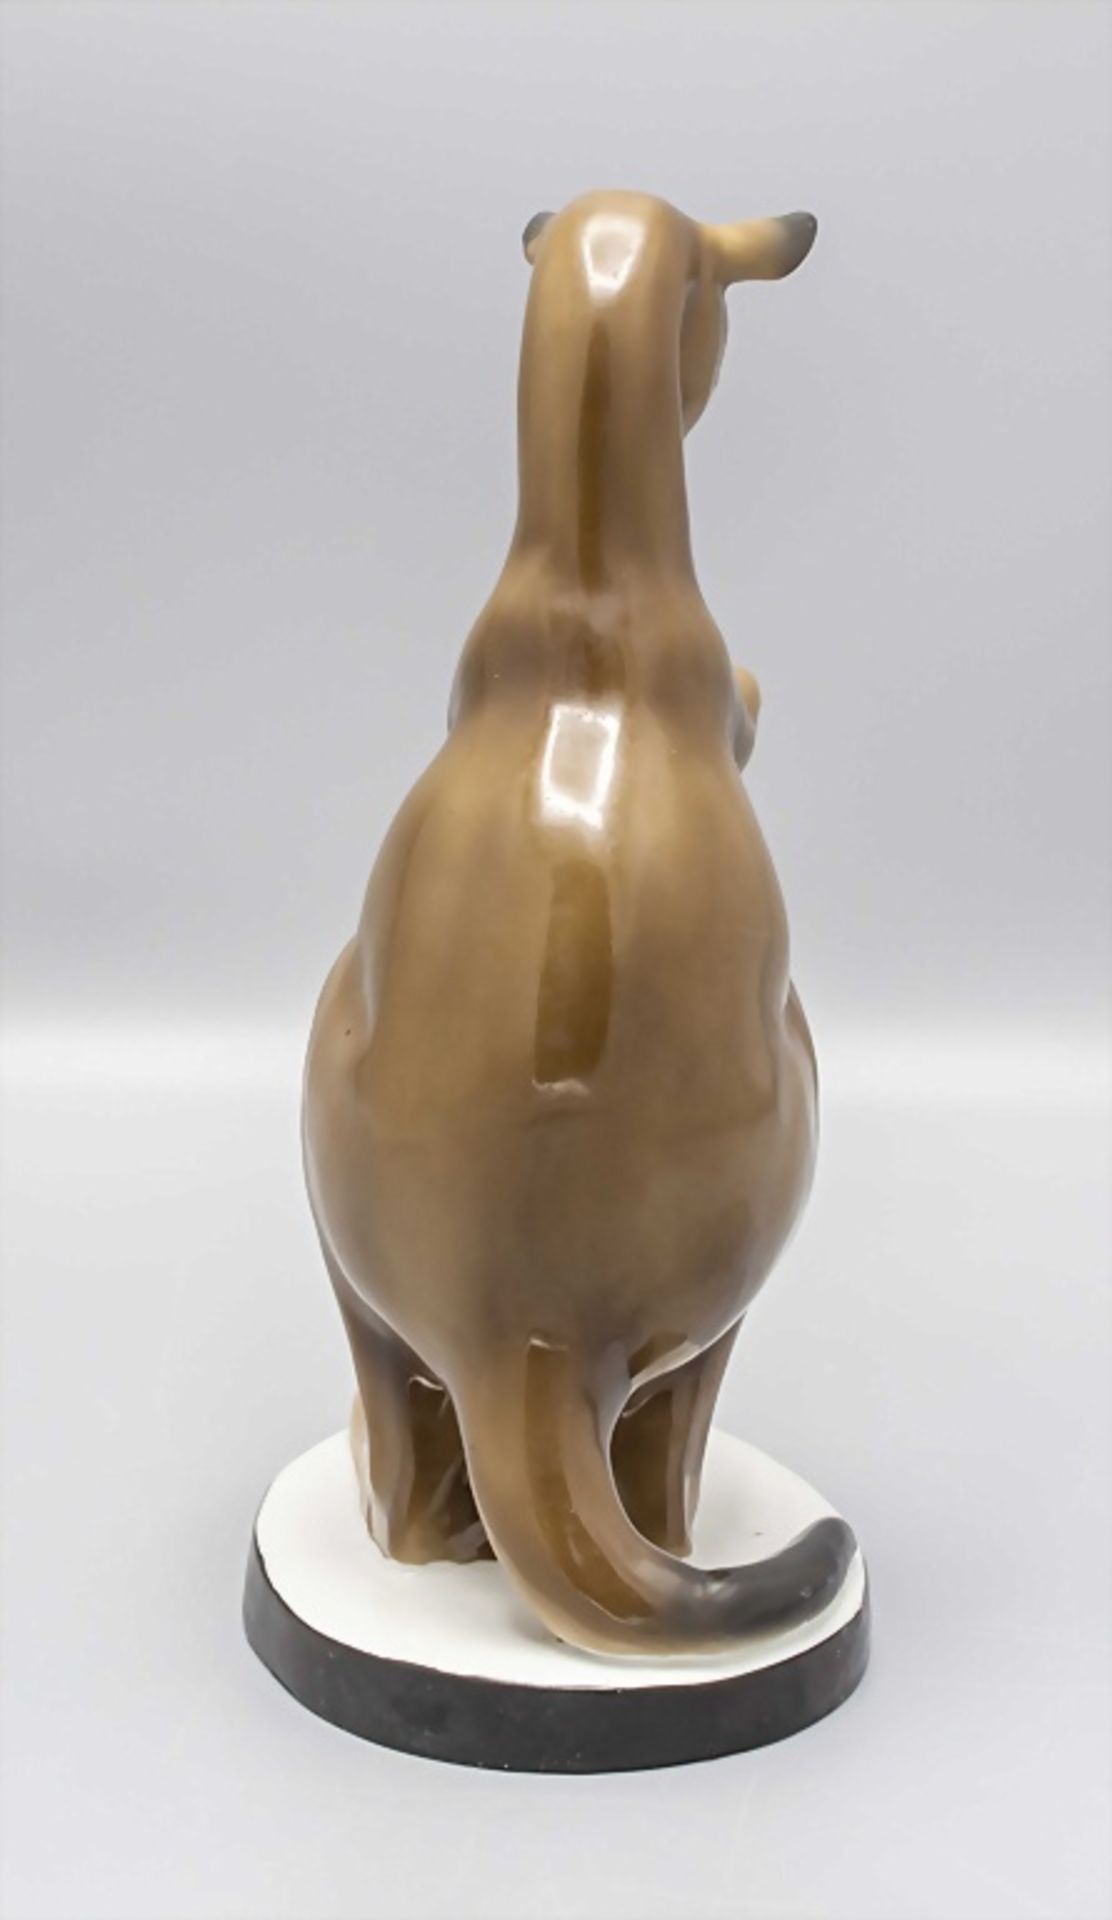 Porzallan Känguru als Halter / A porcelain kangaroo as holder, Anfang 20. Jh. - Bild 4 aus 6